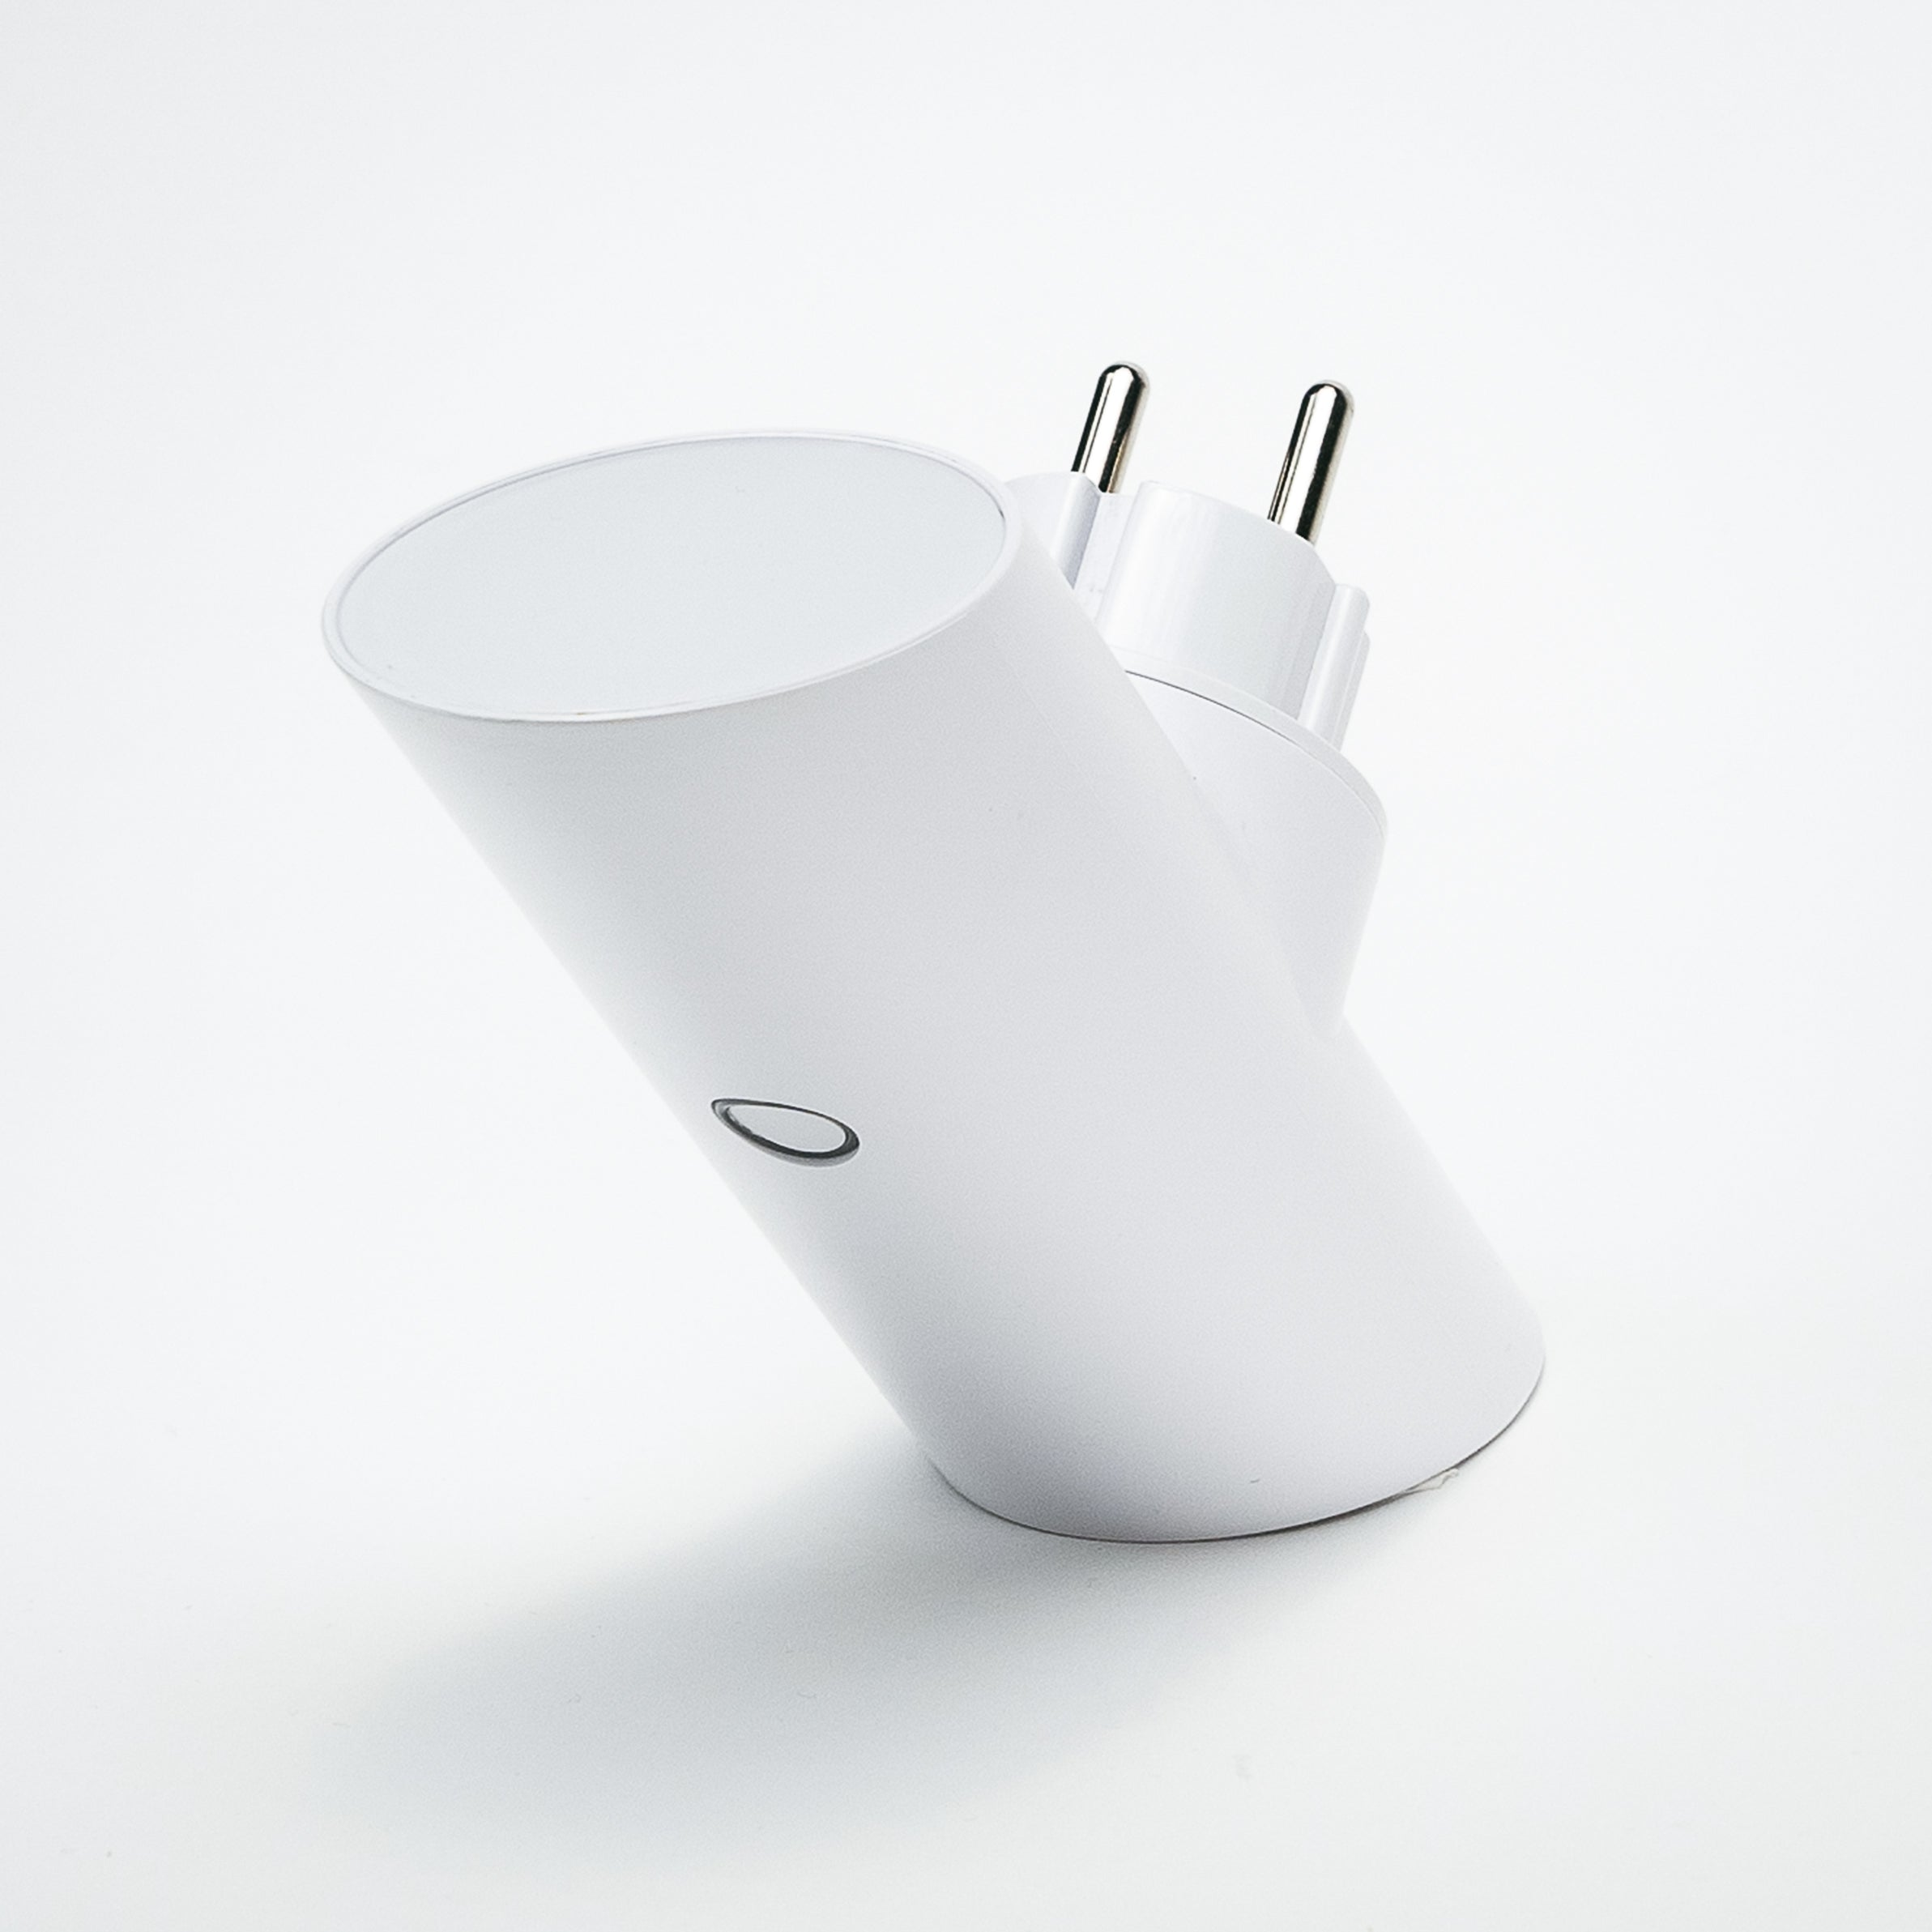 Apple, Wallcharger etc...., Bose, 4 POWER-HUBS Sony SMART TECH Adapter Spotlight Samsung, Weiß mit